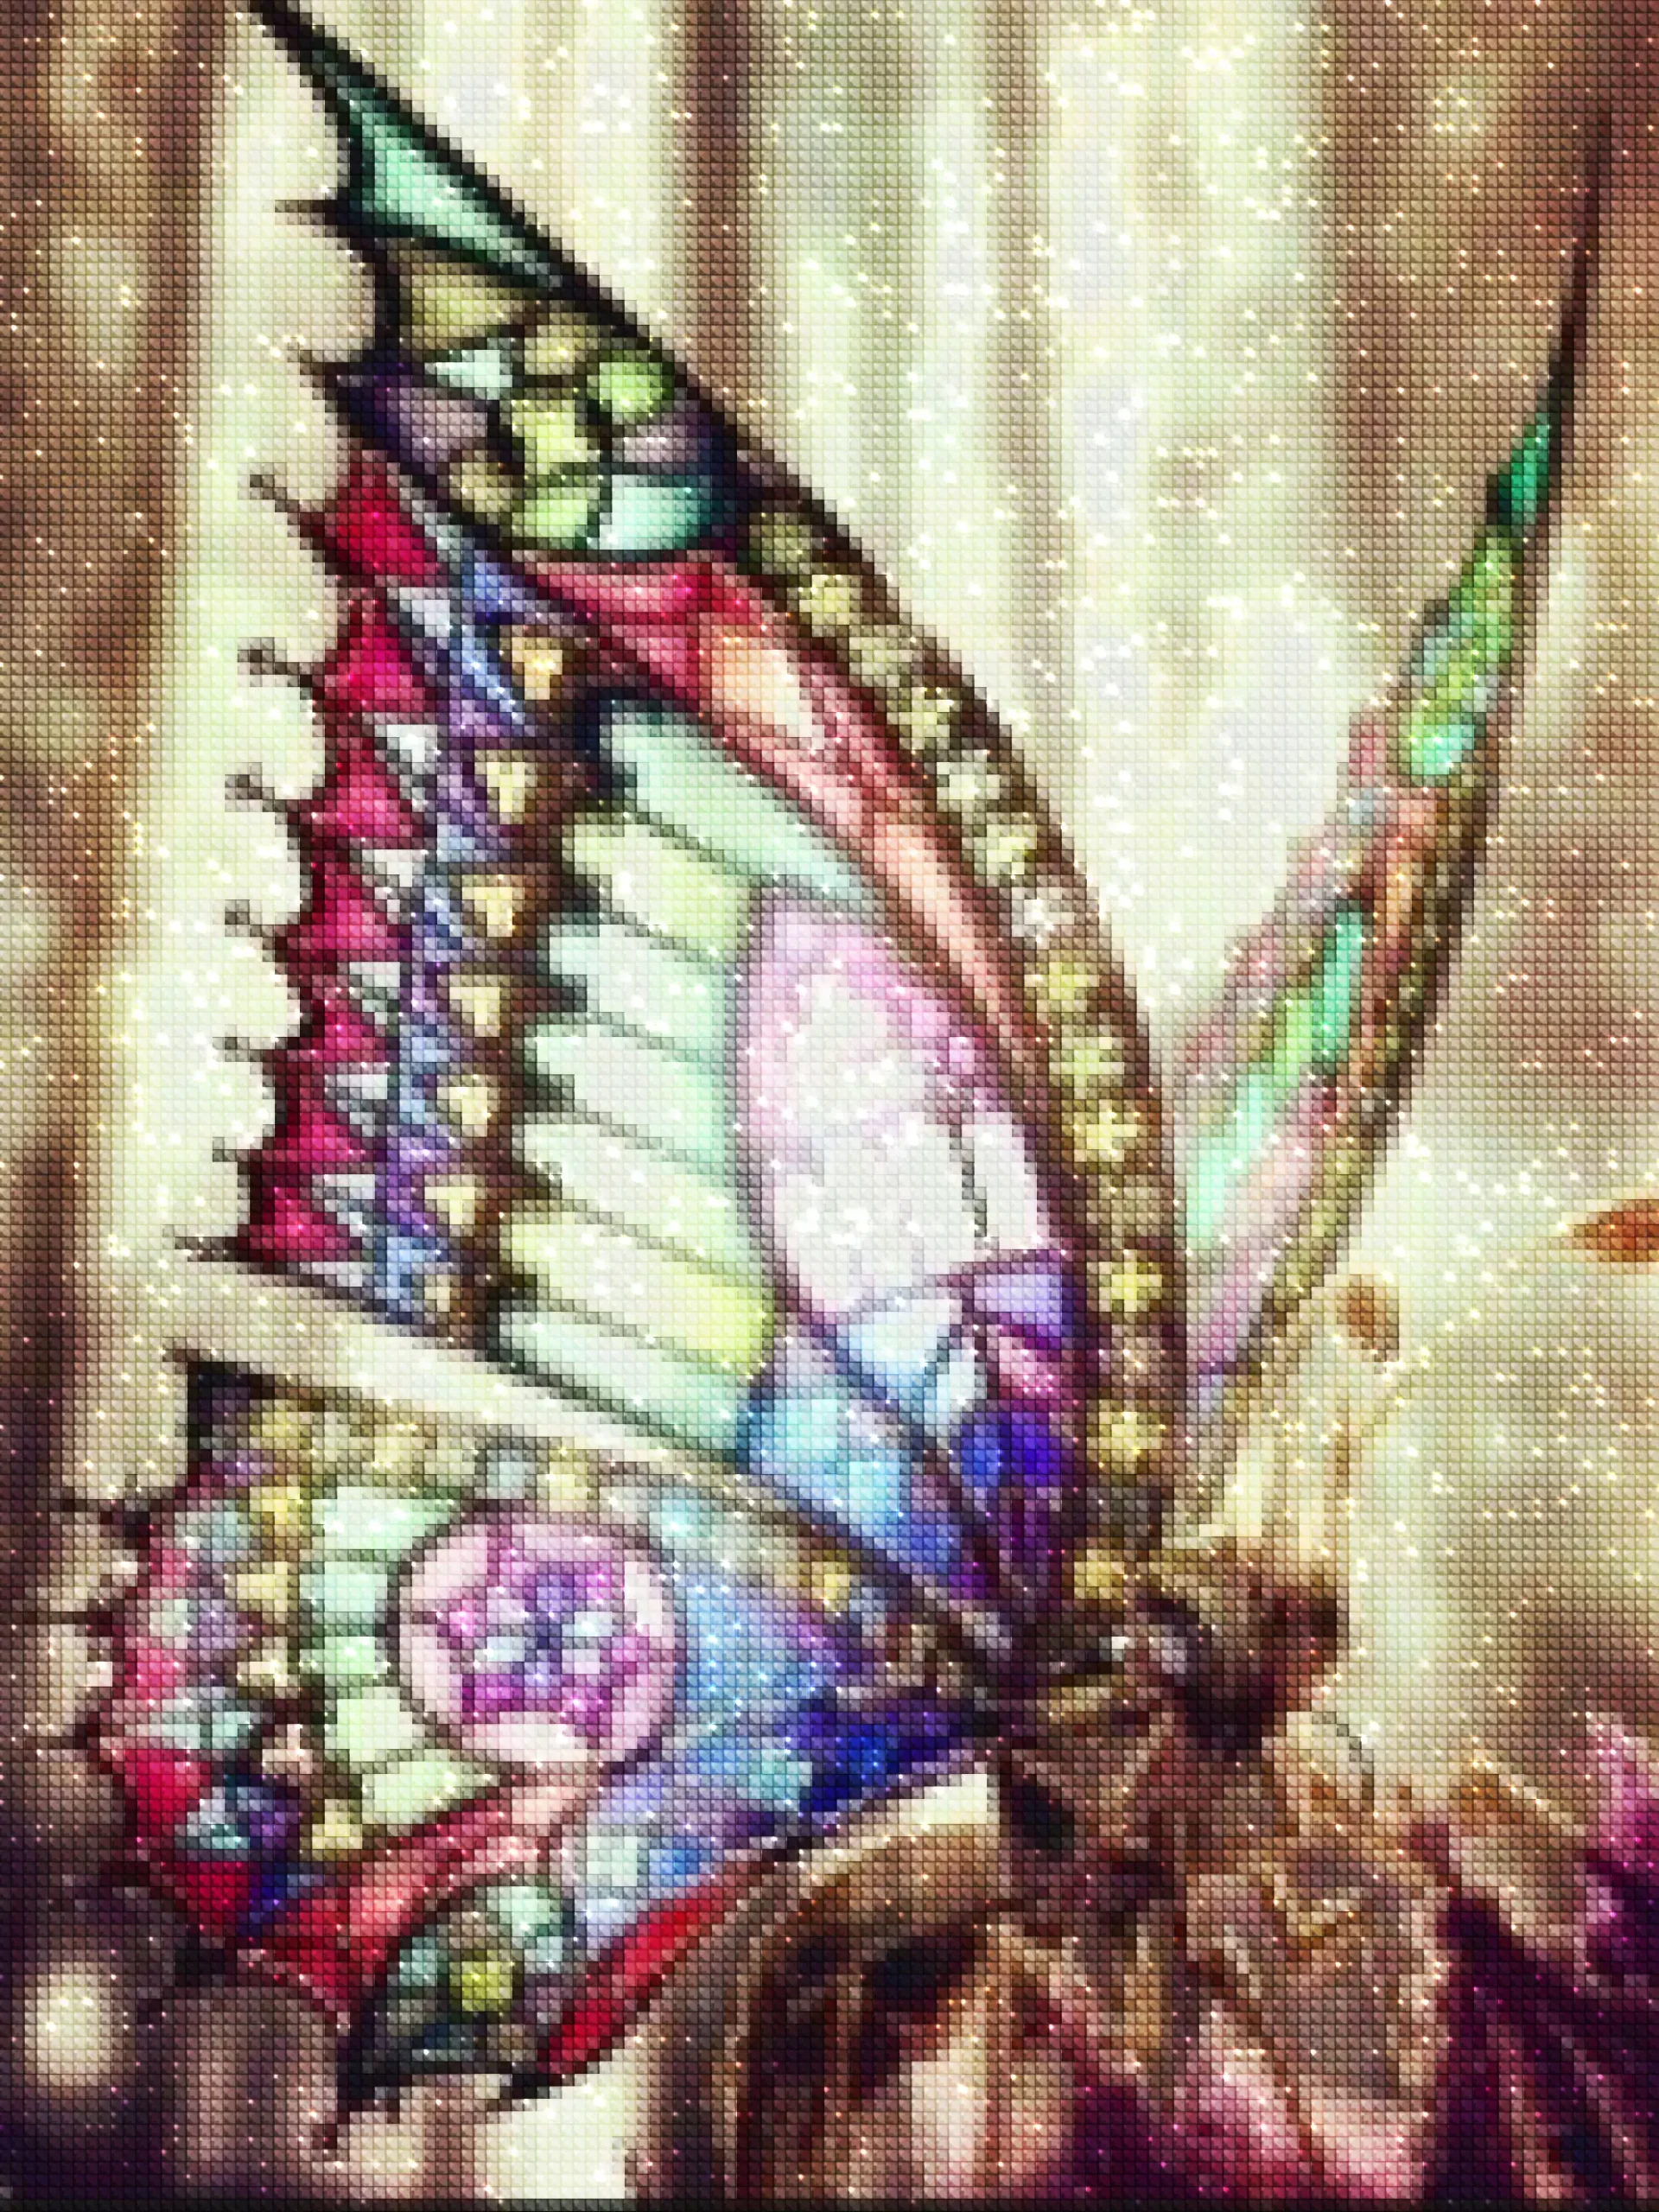 diamanten-tovenaar-diamant-schildersets-dieren-vlinder-vlinder met gebrandschilderde vleugels-diamonds.webp